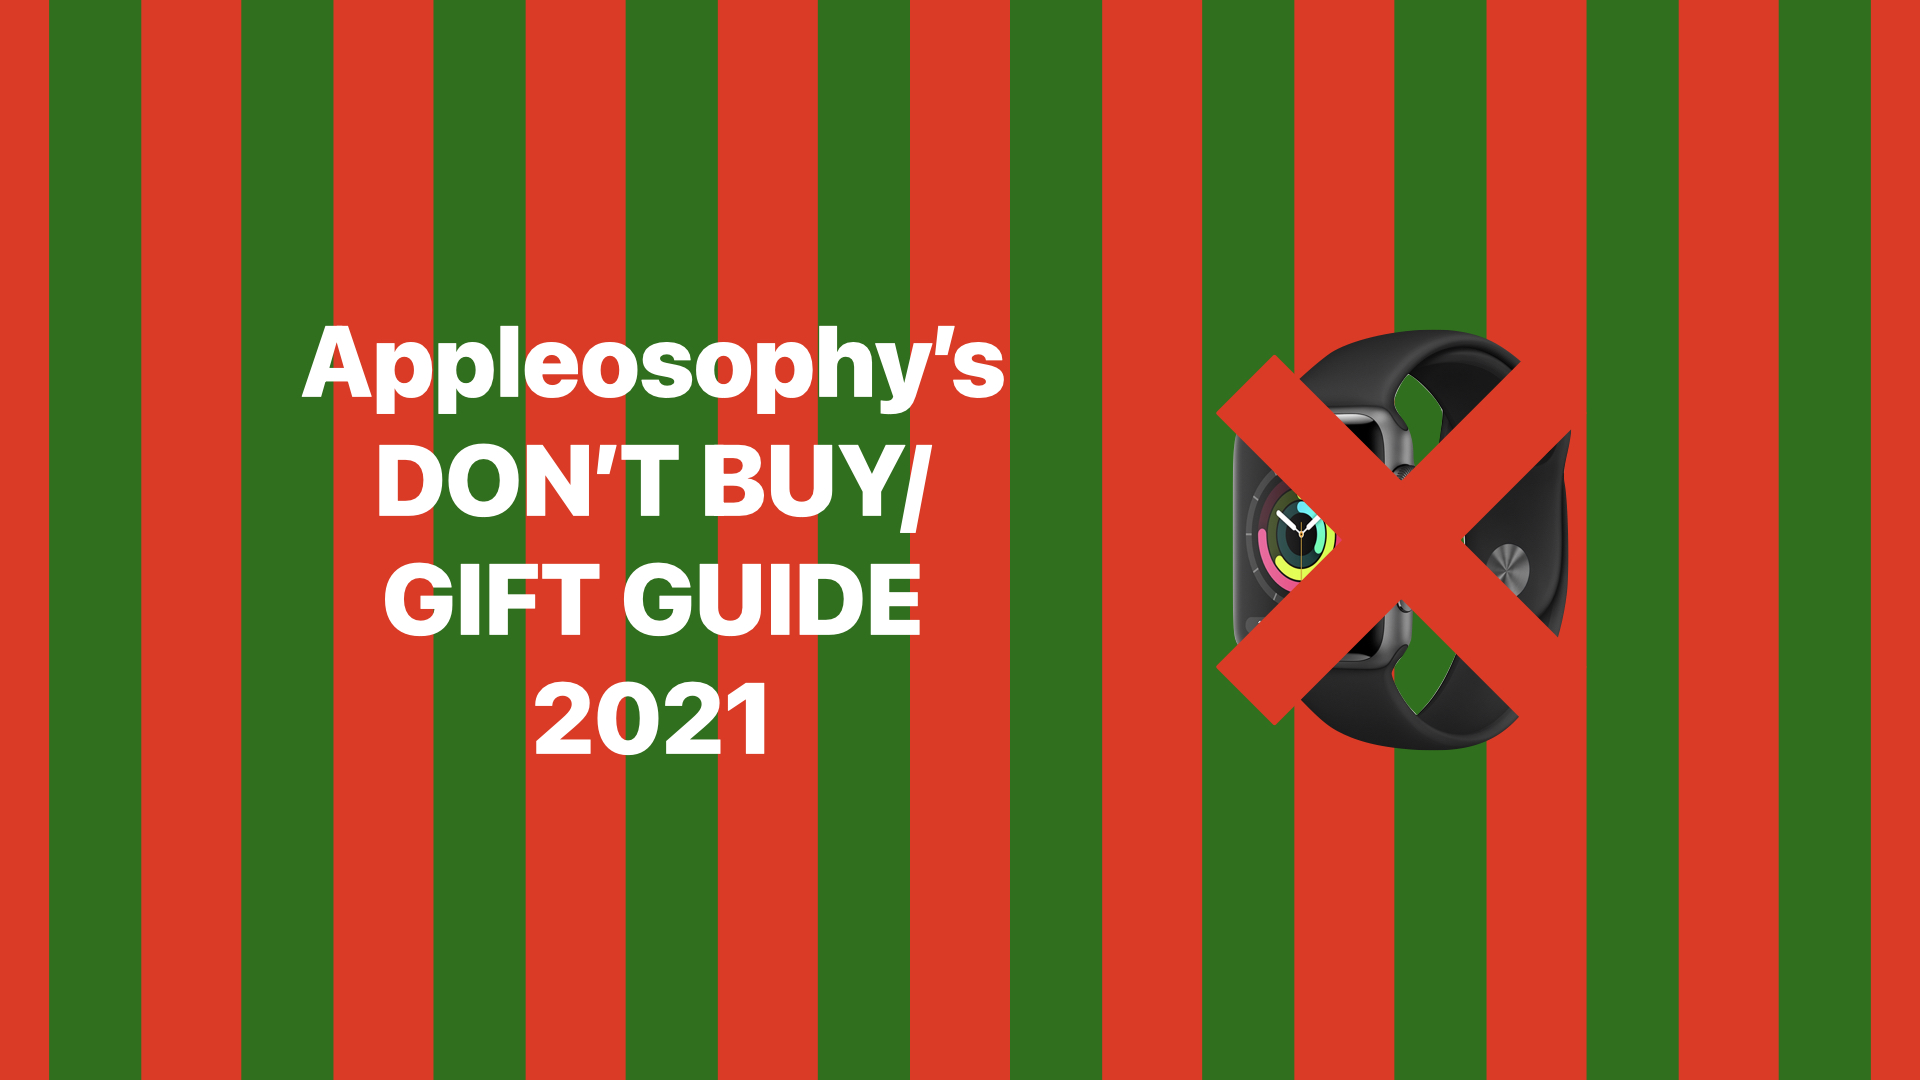 Guía de regalos / no comprar de Appleosophy: 10 productos que debe evitar